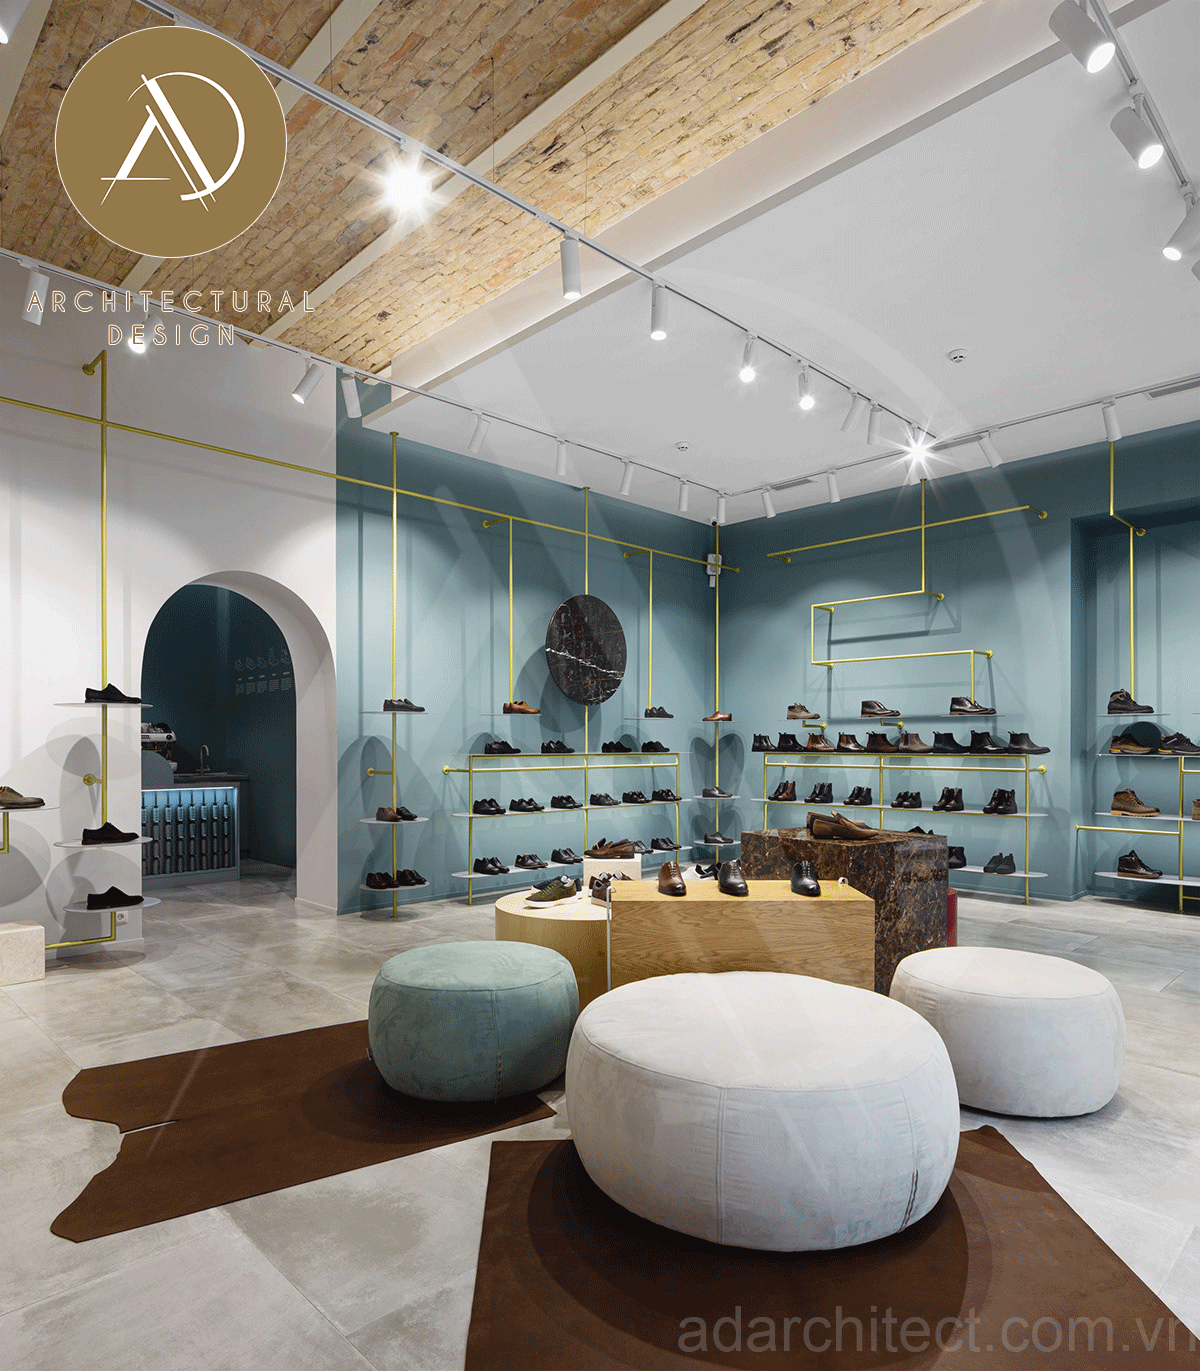 thiết kế shop giày: có ghế ngồi và chỗ trưng bày giày vừa phải, giúp khách hàng trải nghiệm tốt nhất